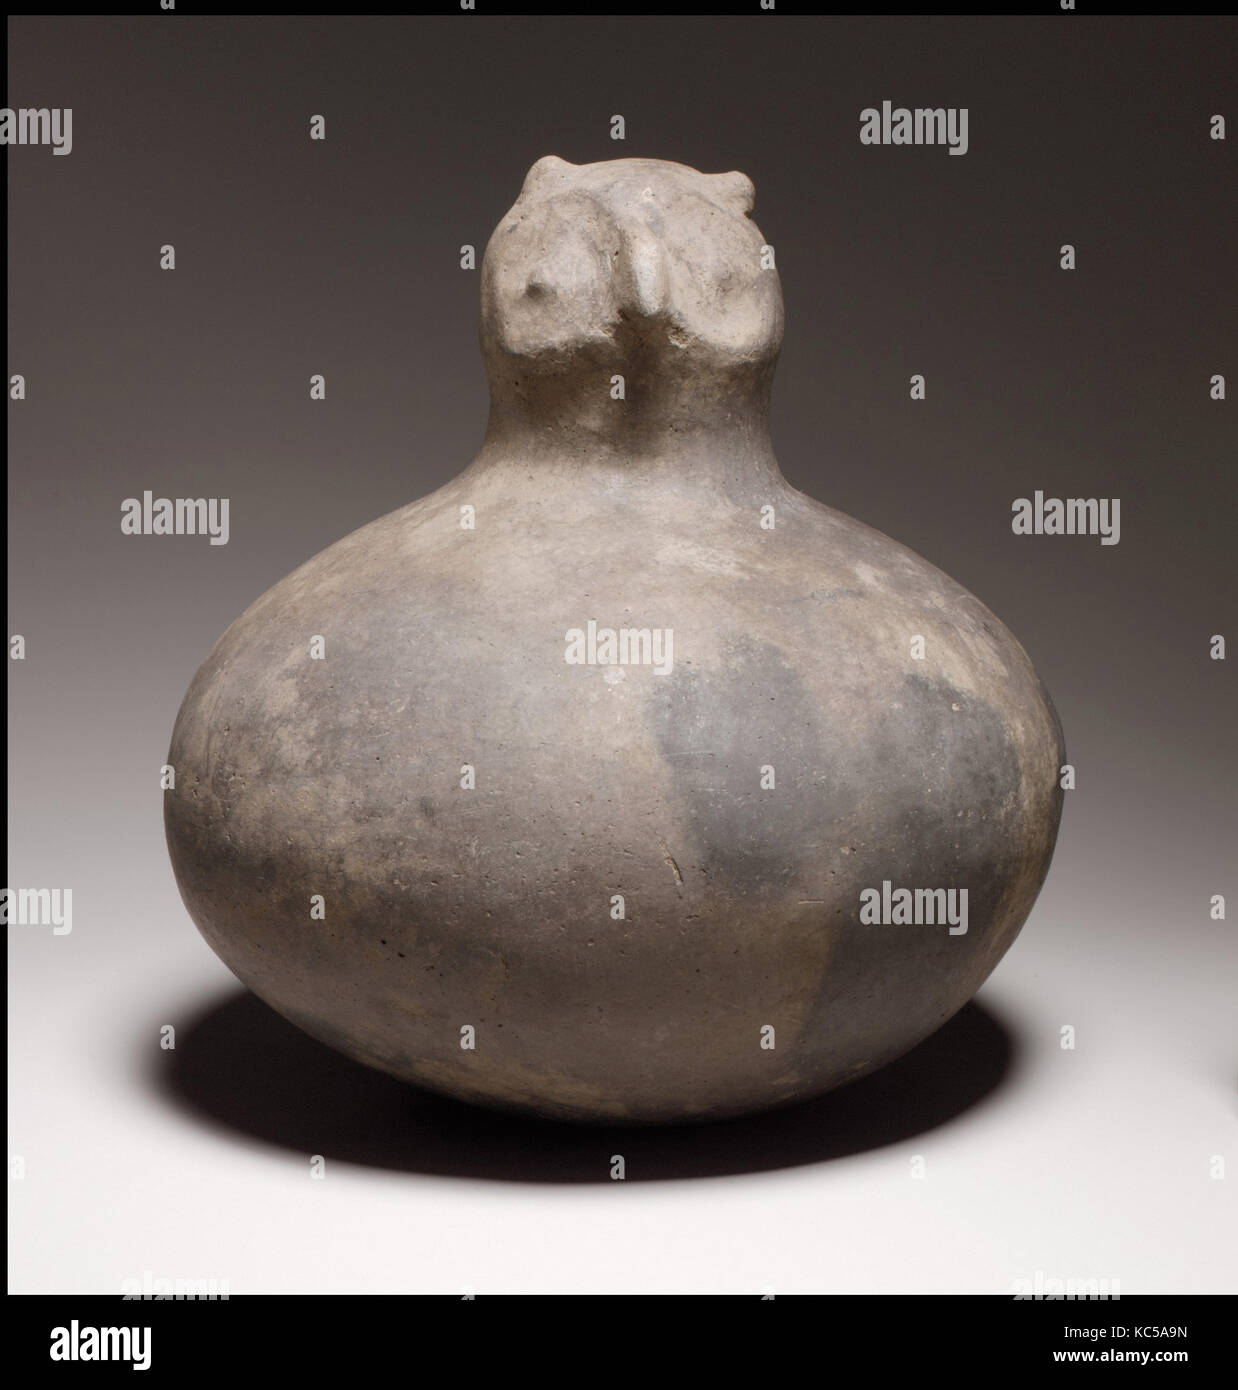 Keramik Eule Stockfotos und -bilder Kaufen - Alamy